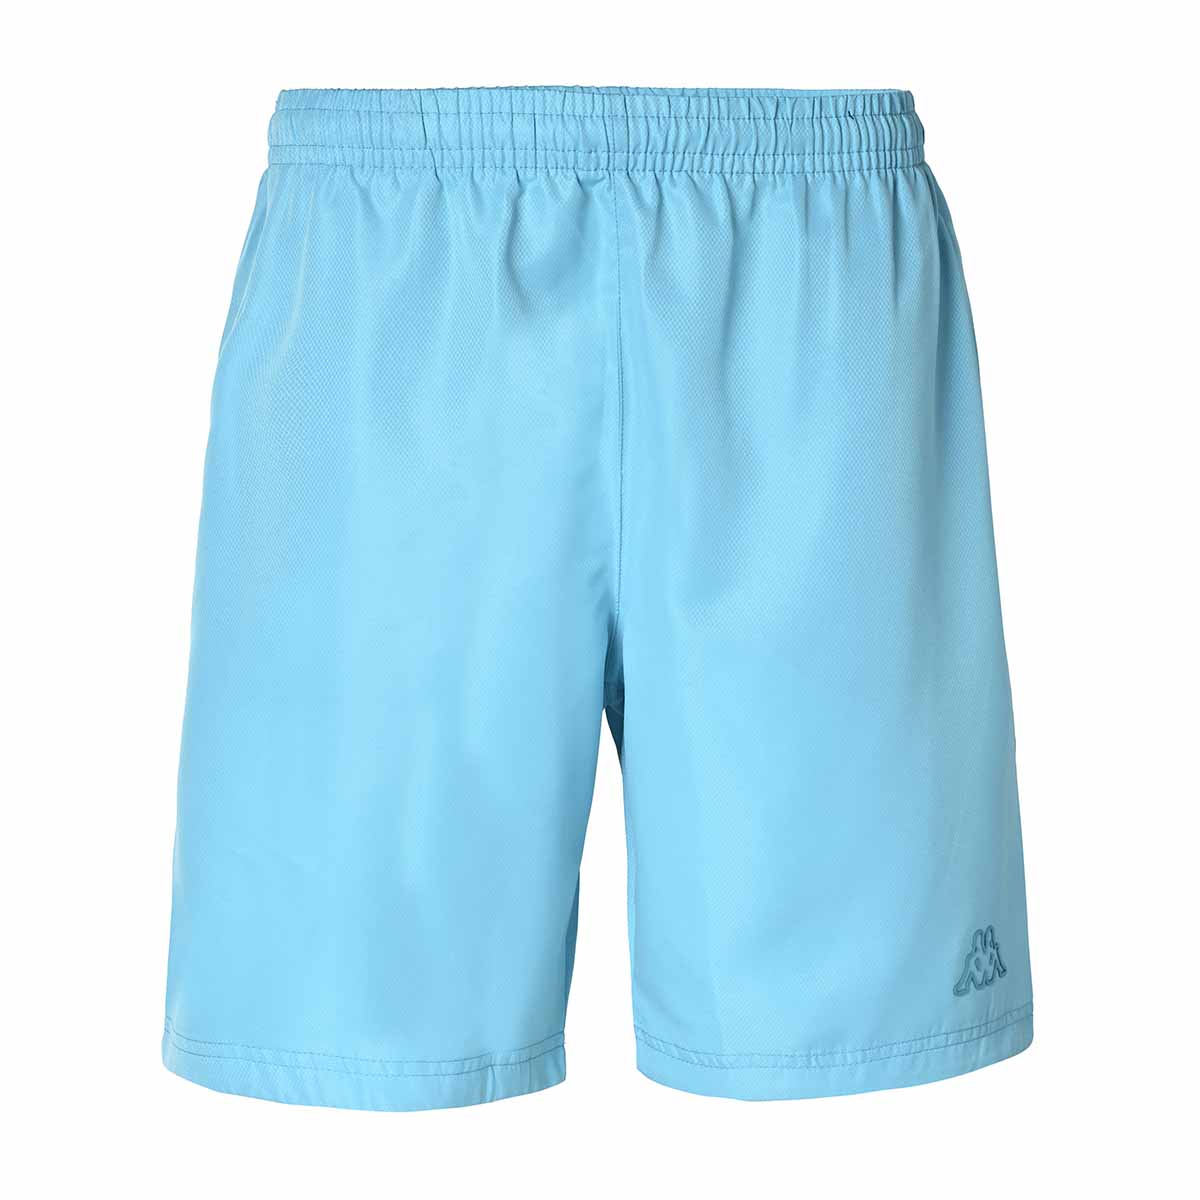 Pantalones cortos Kiamon Azul Hombre